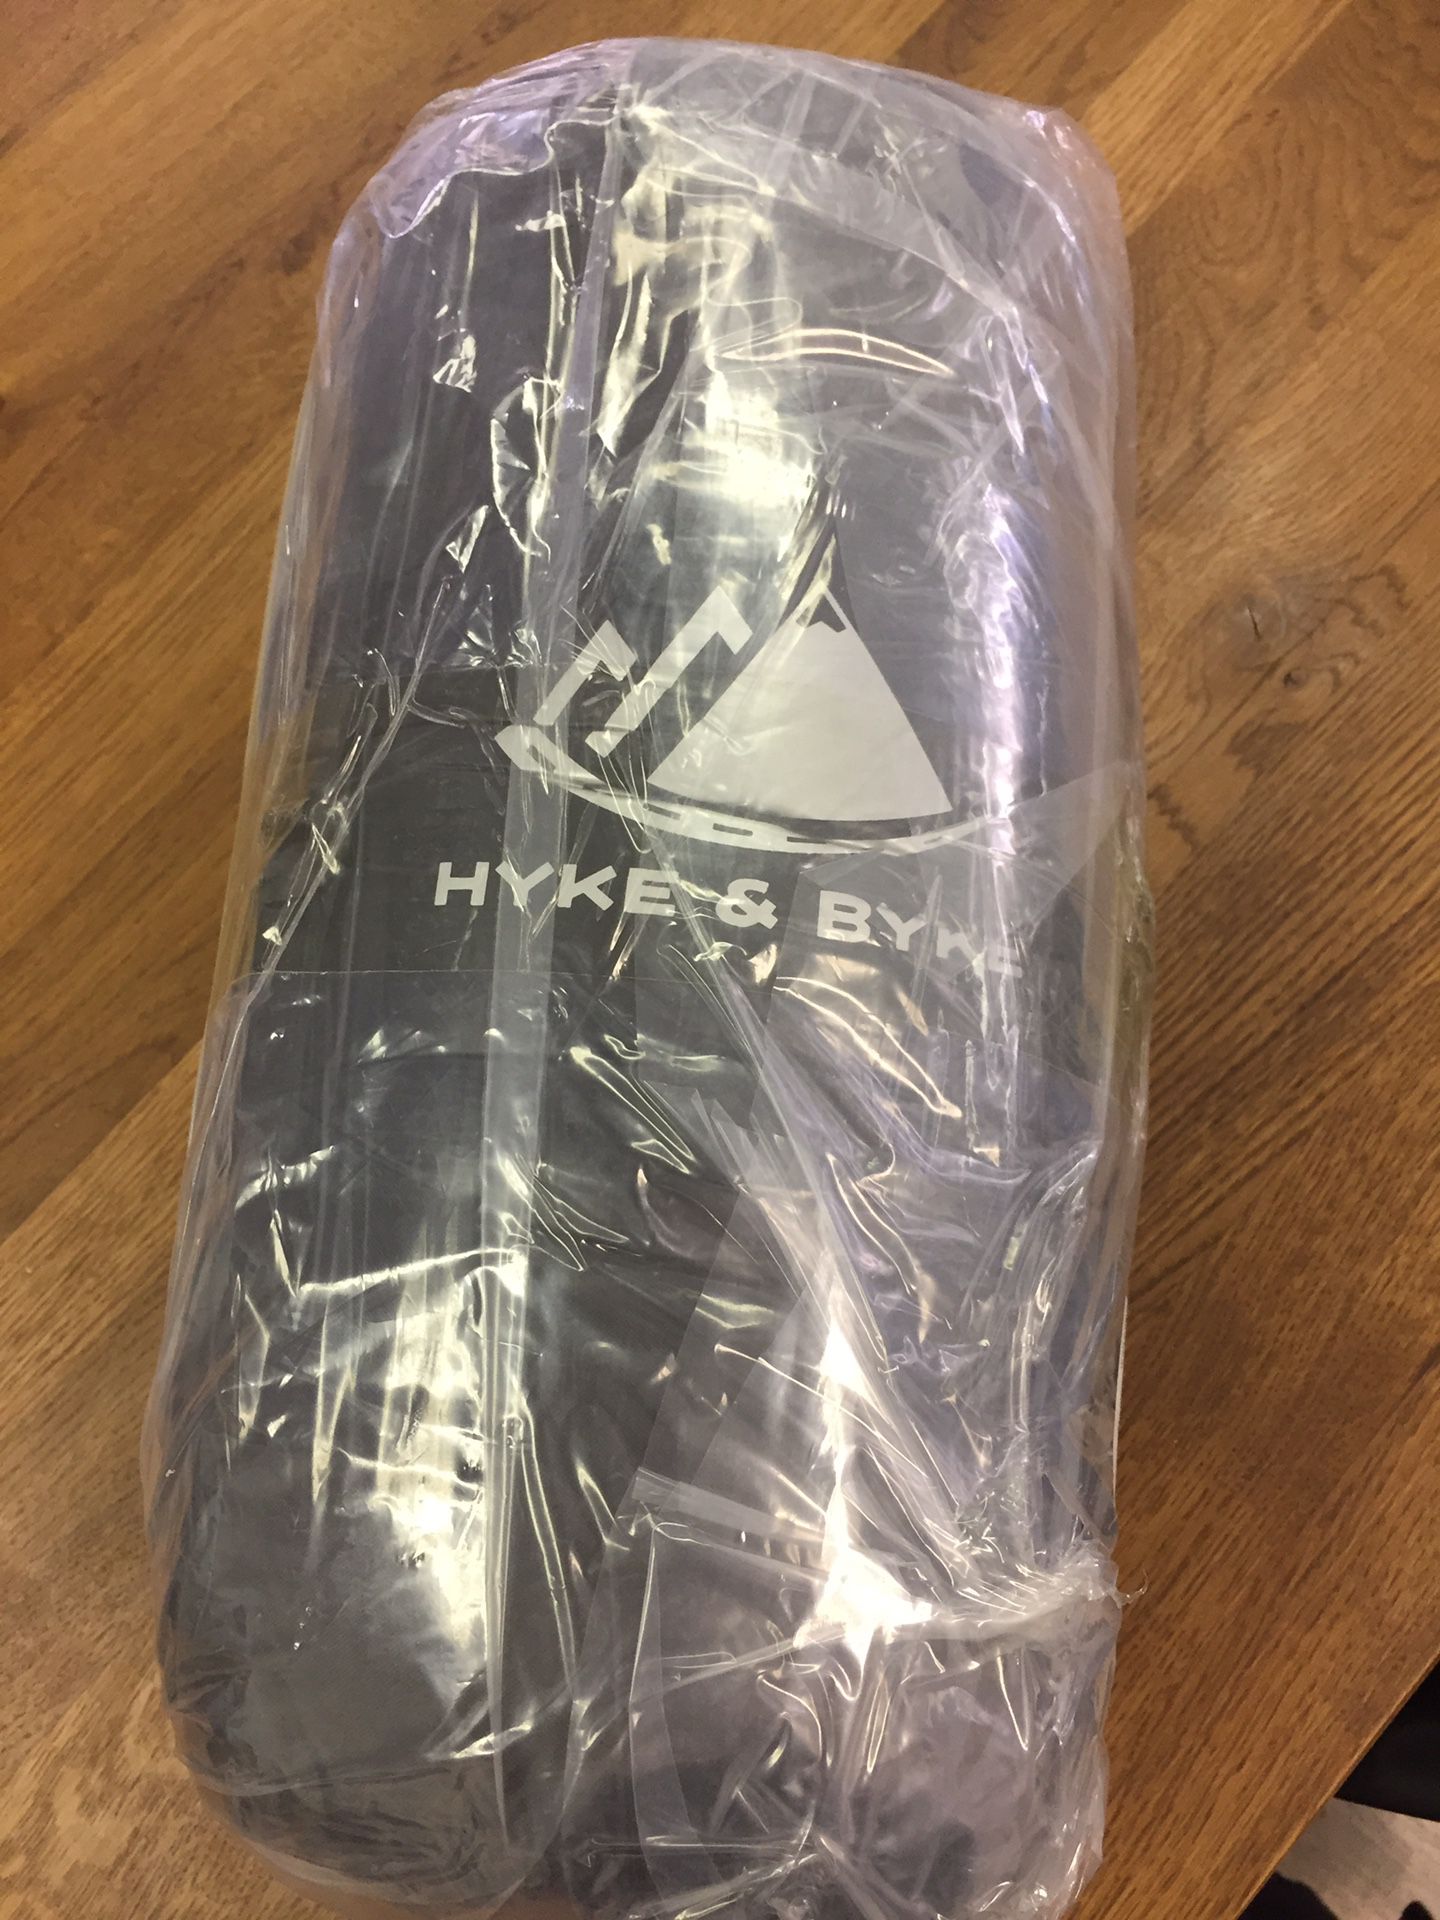 Hyke and byke 0 degree sleeping bag